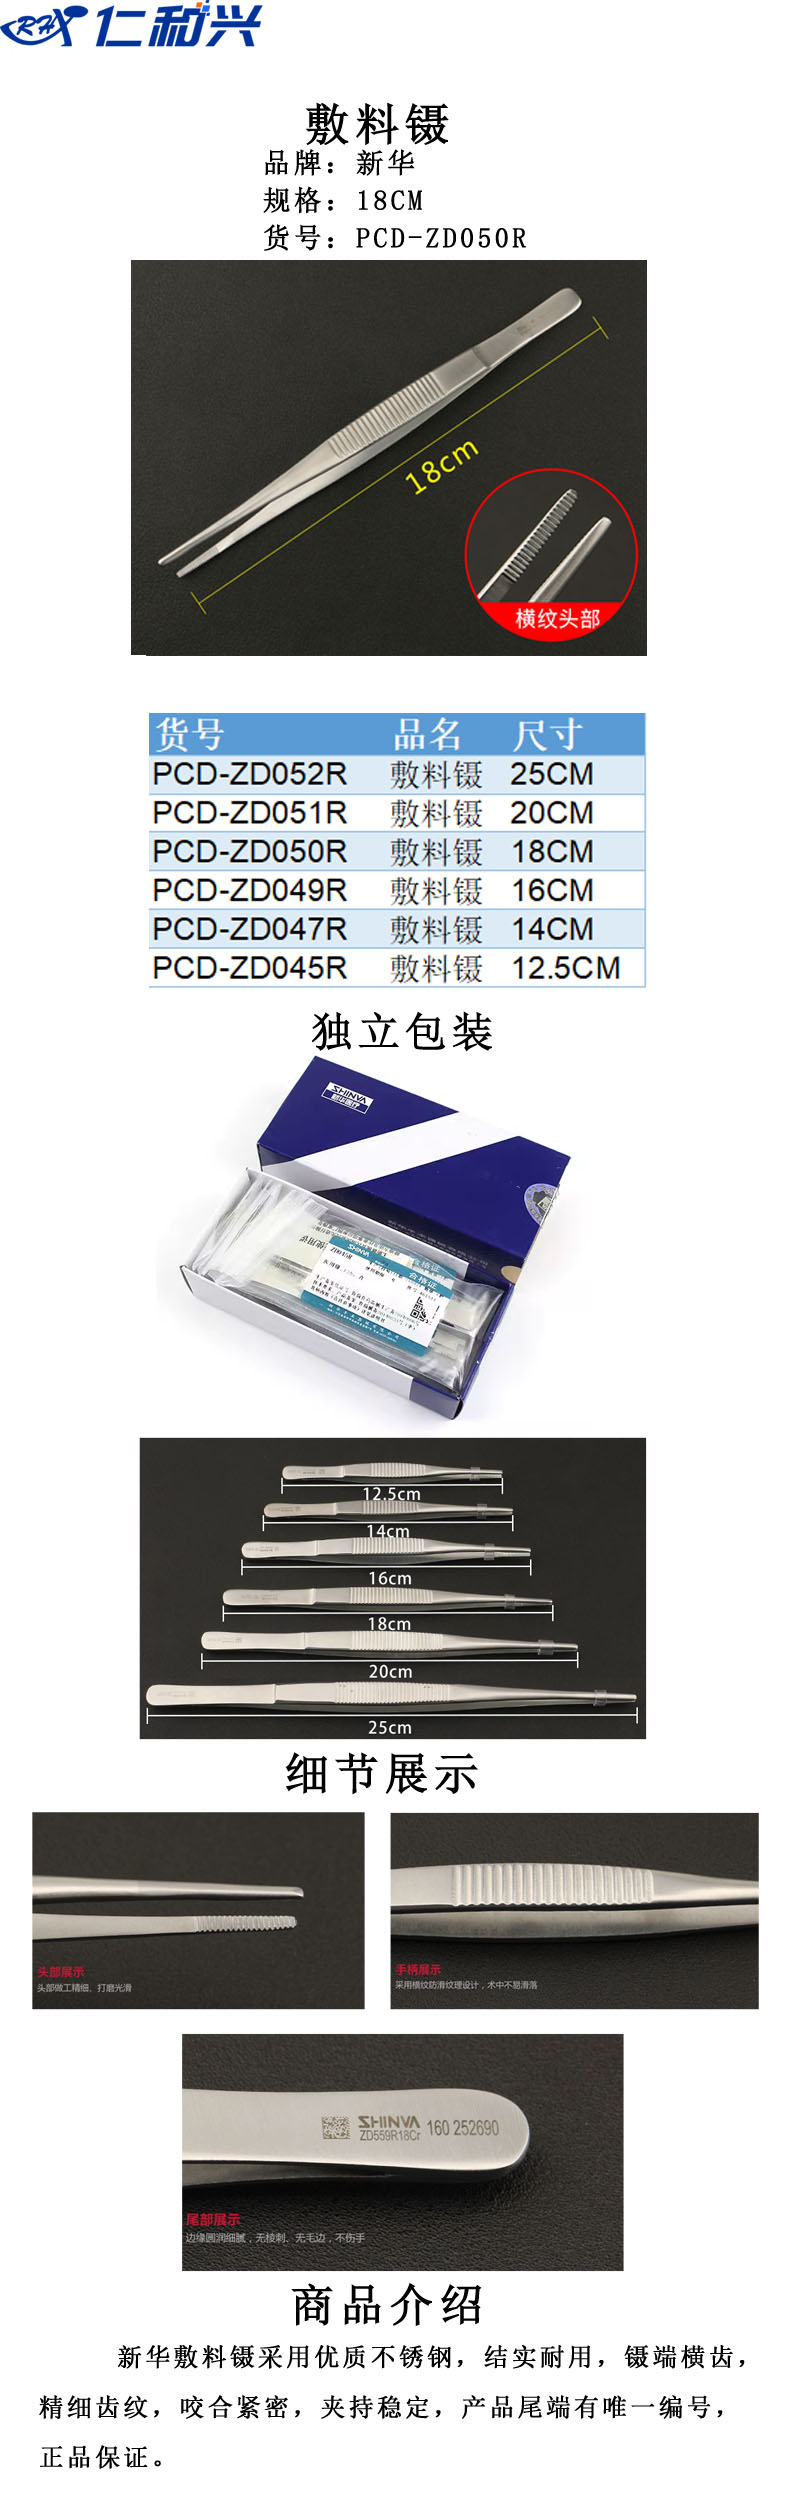 PCD-ZD050R.jpg